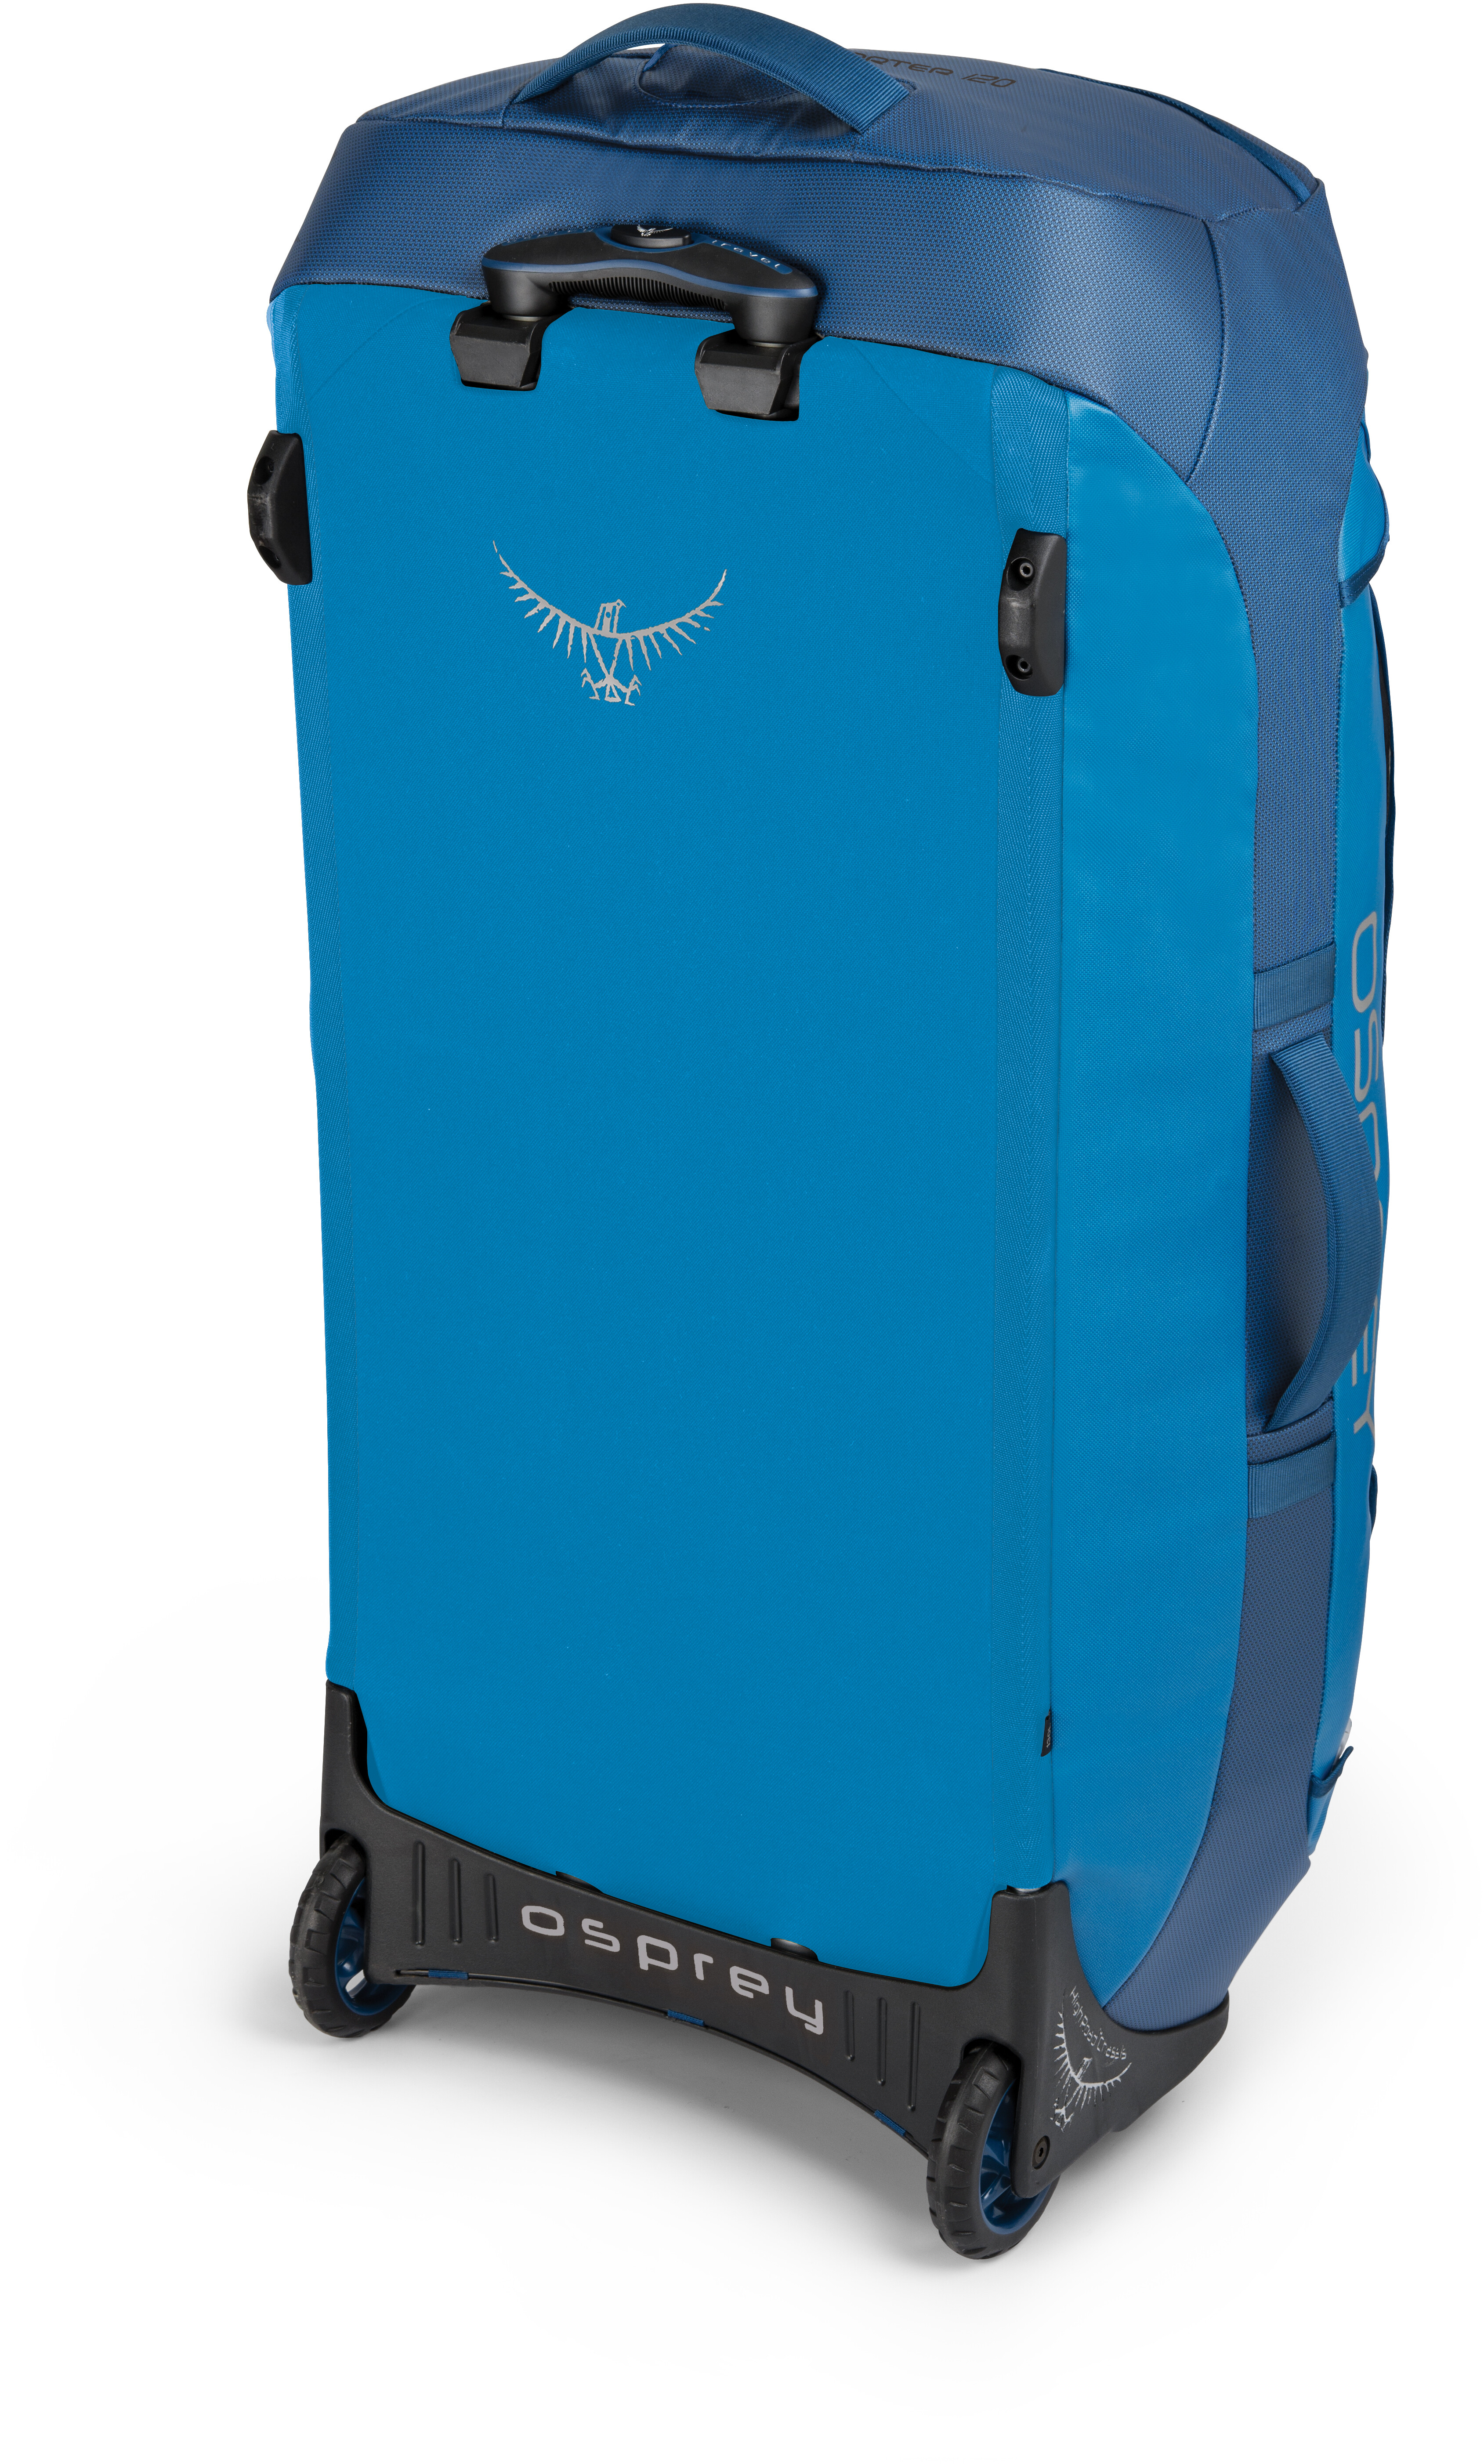 travel roller bag osprey